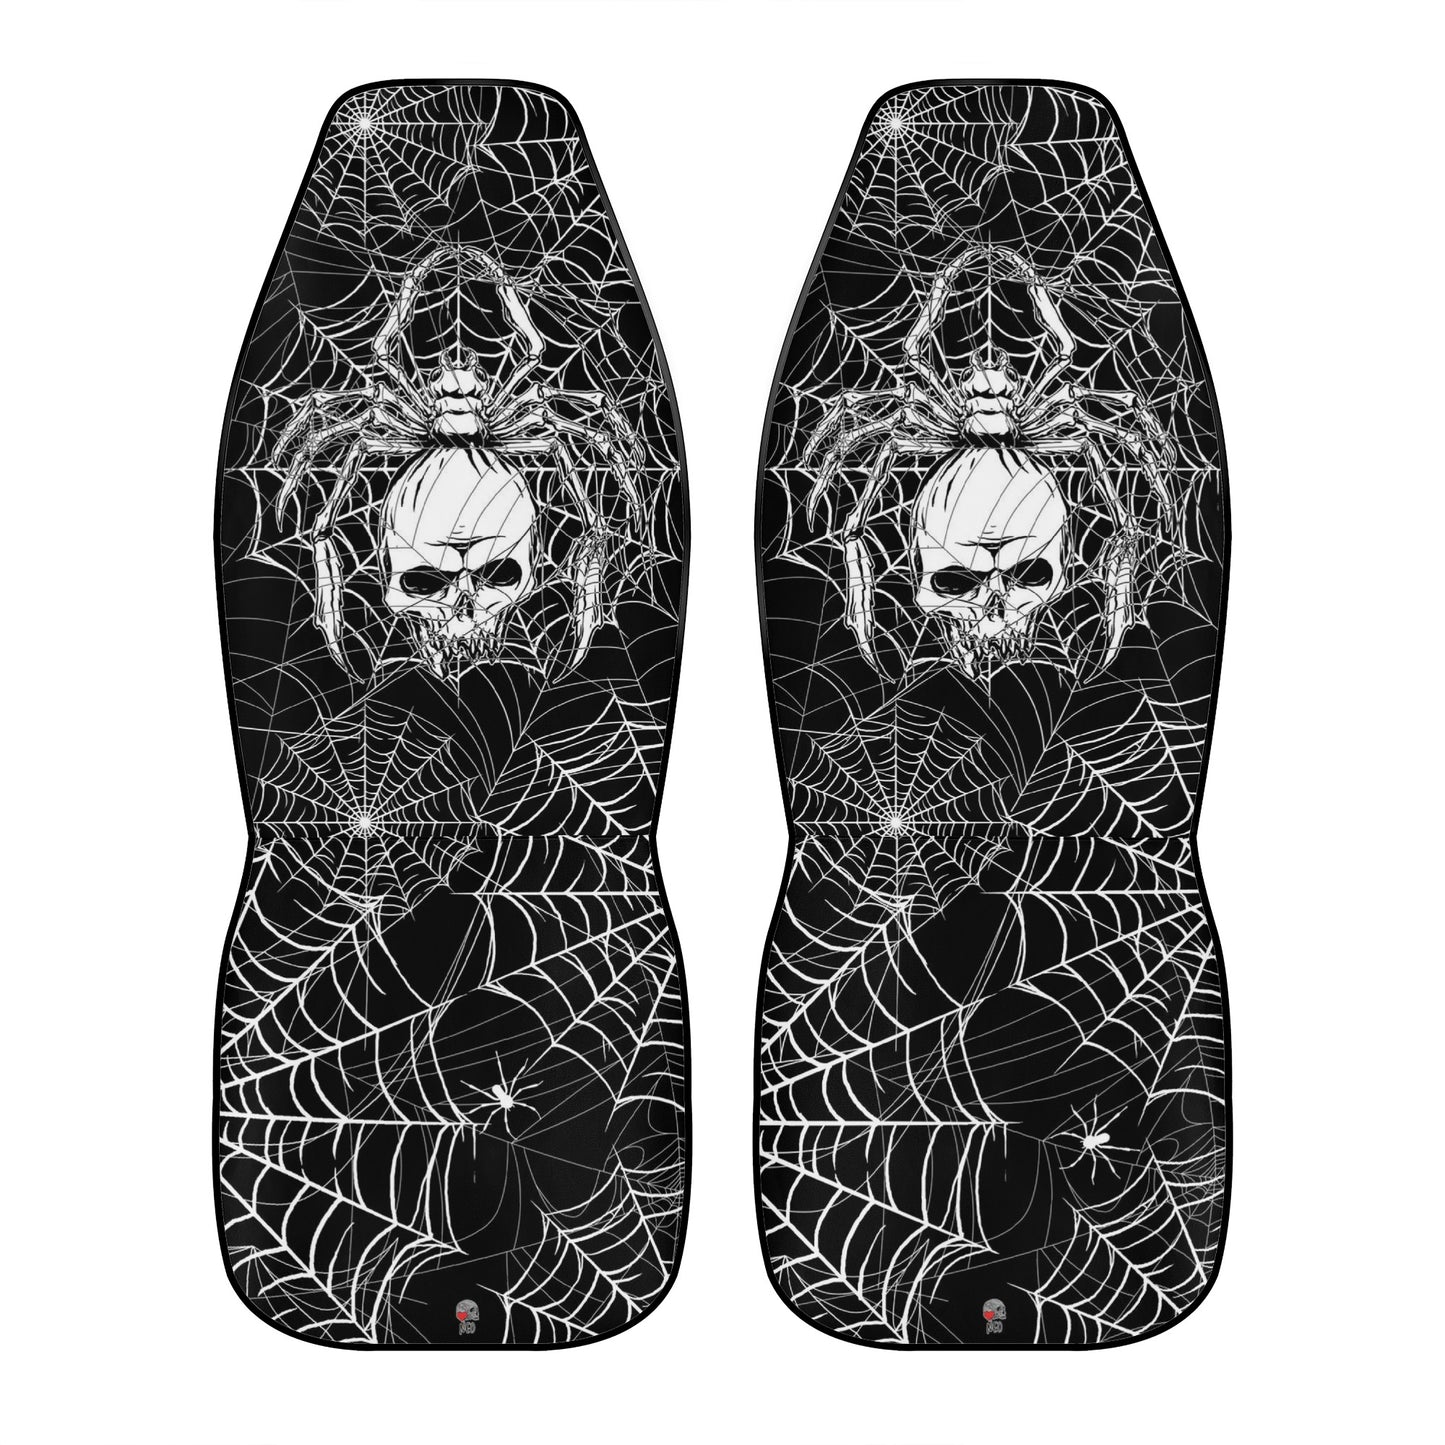 Spider Skull Car Seat Cover Full Set